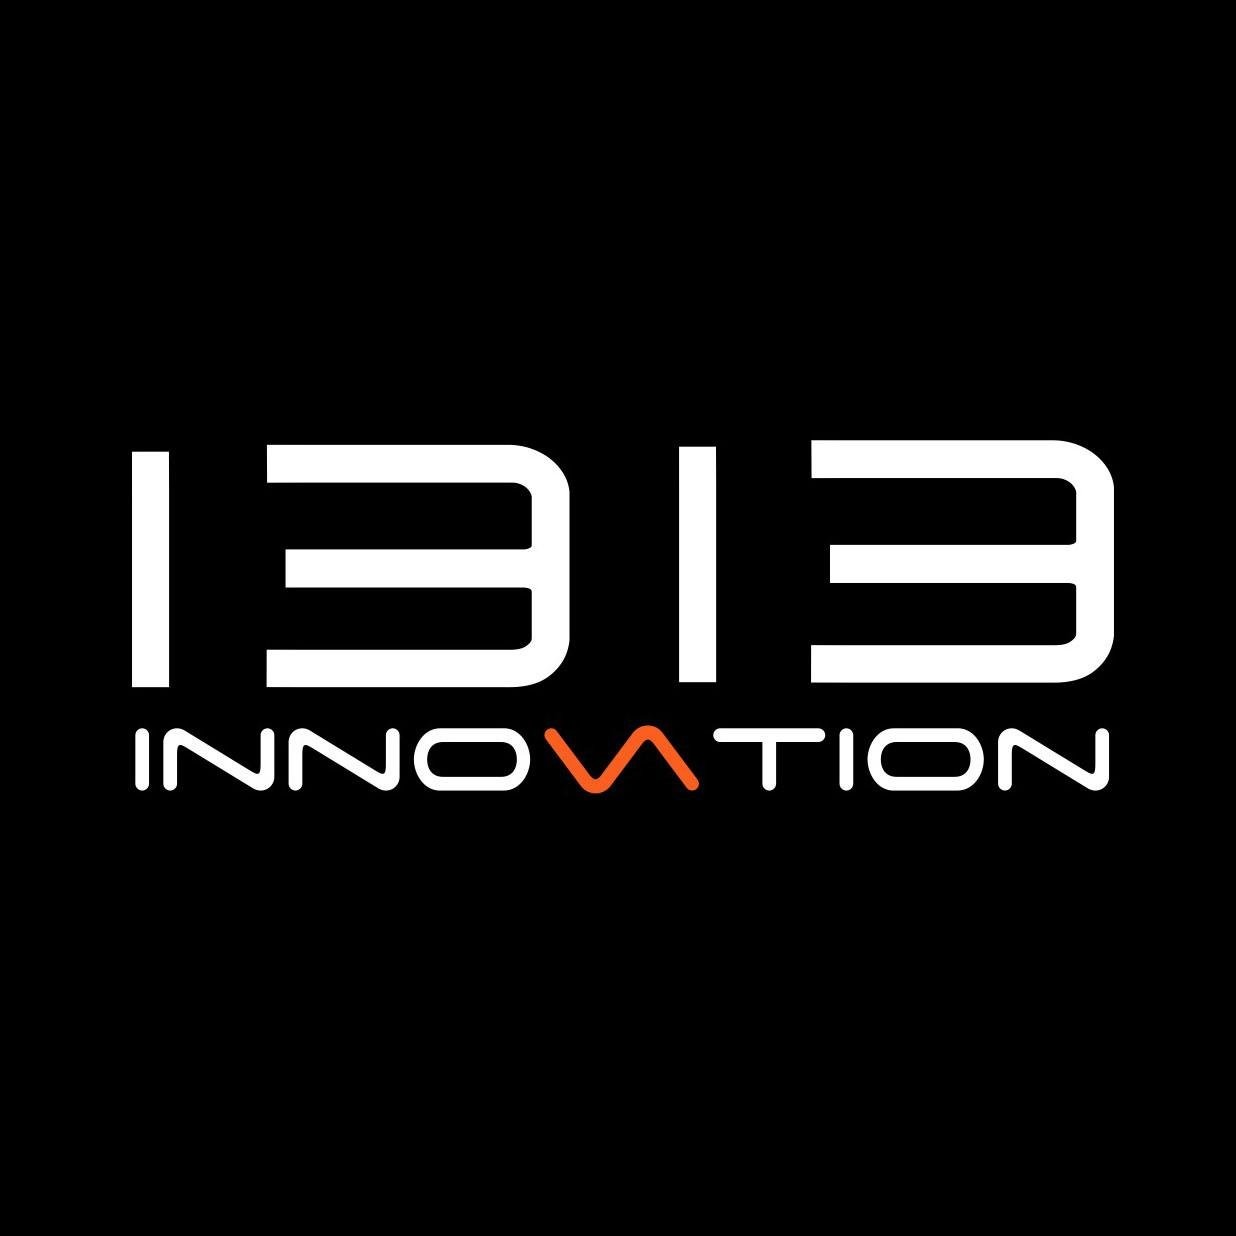 1313 Innovation